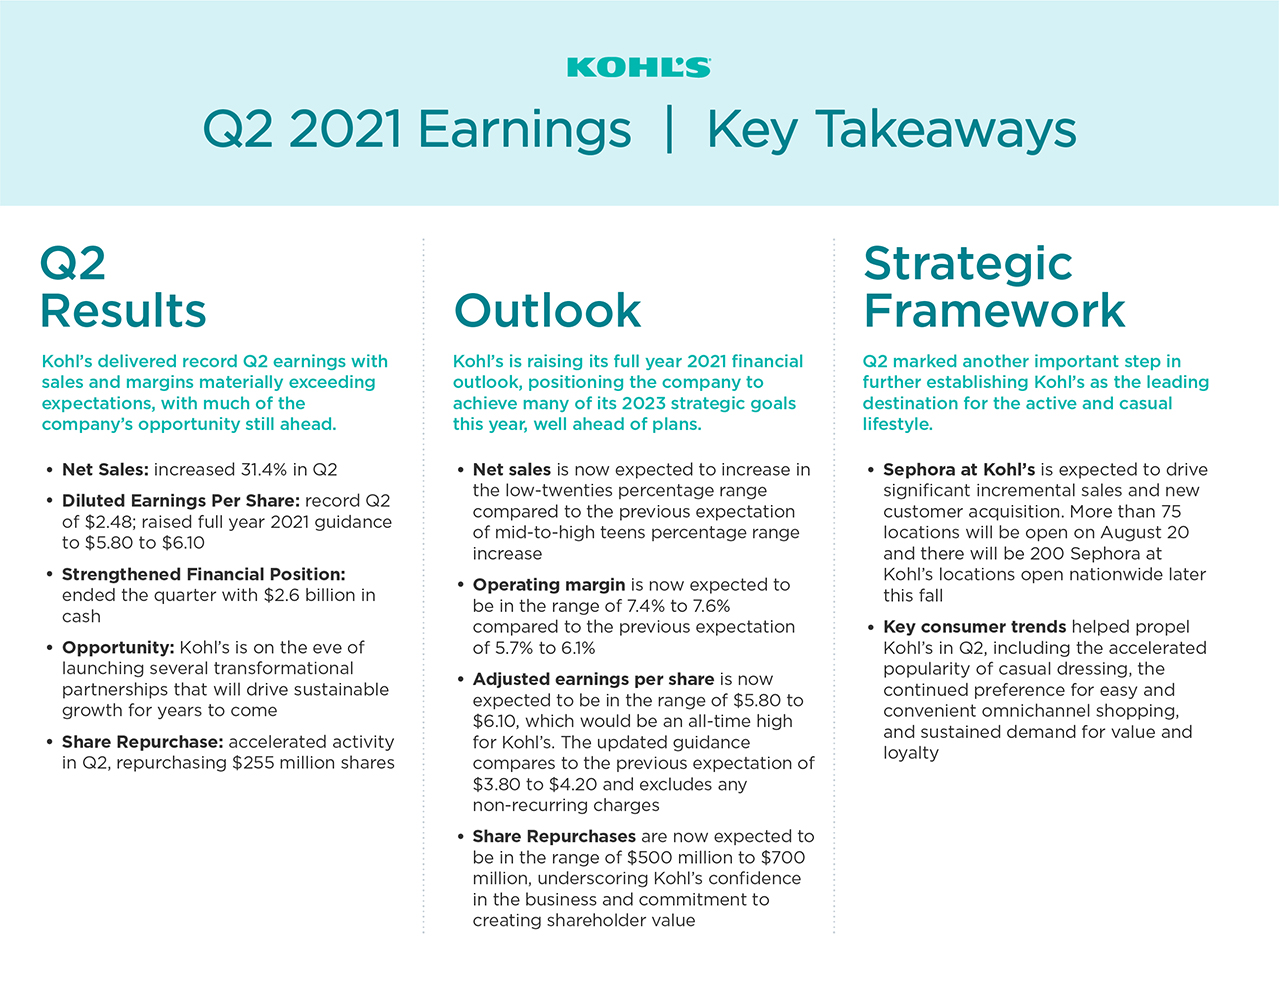 Kohl’s Q2 2021 Earnings Key Takeaways